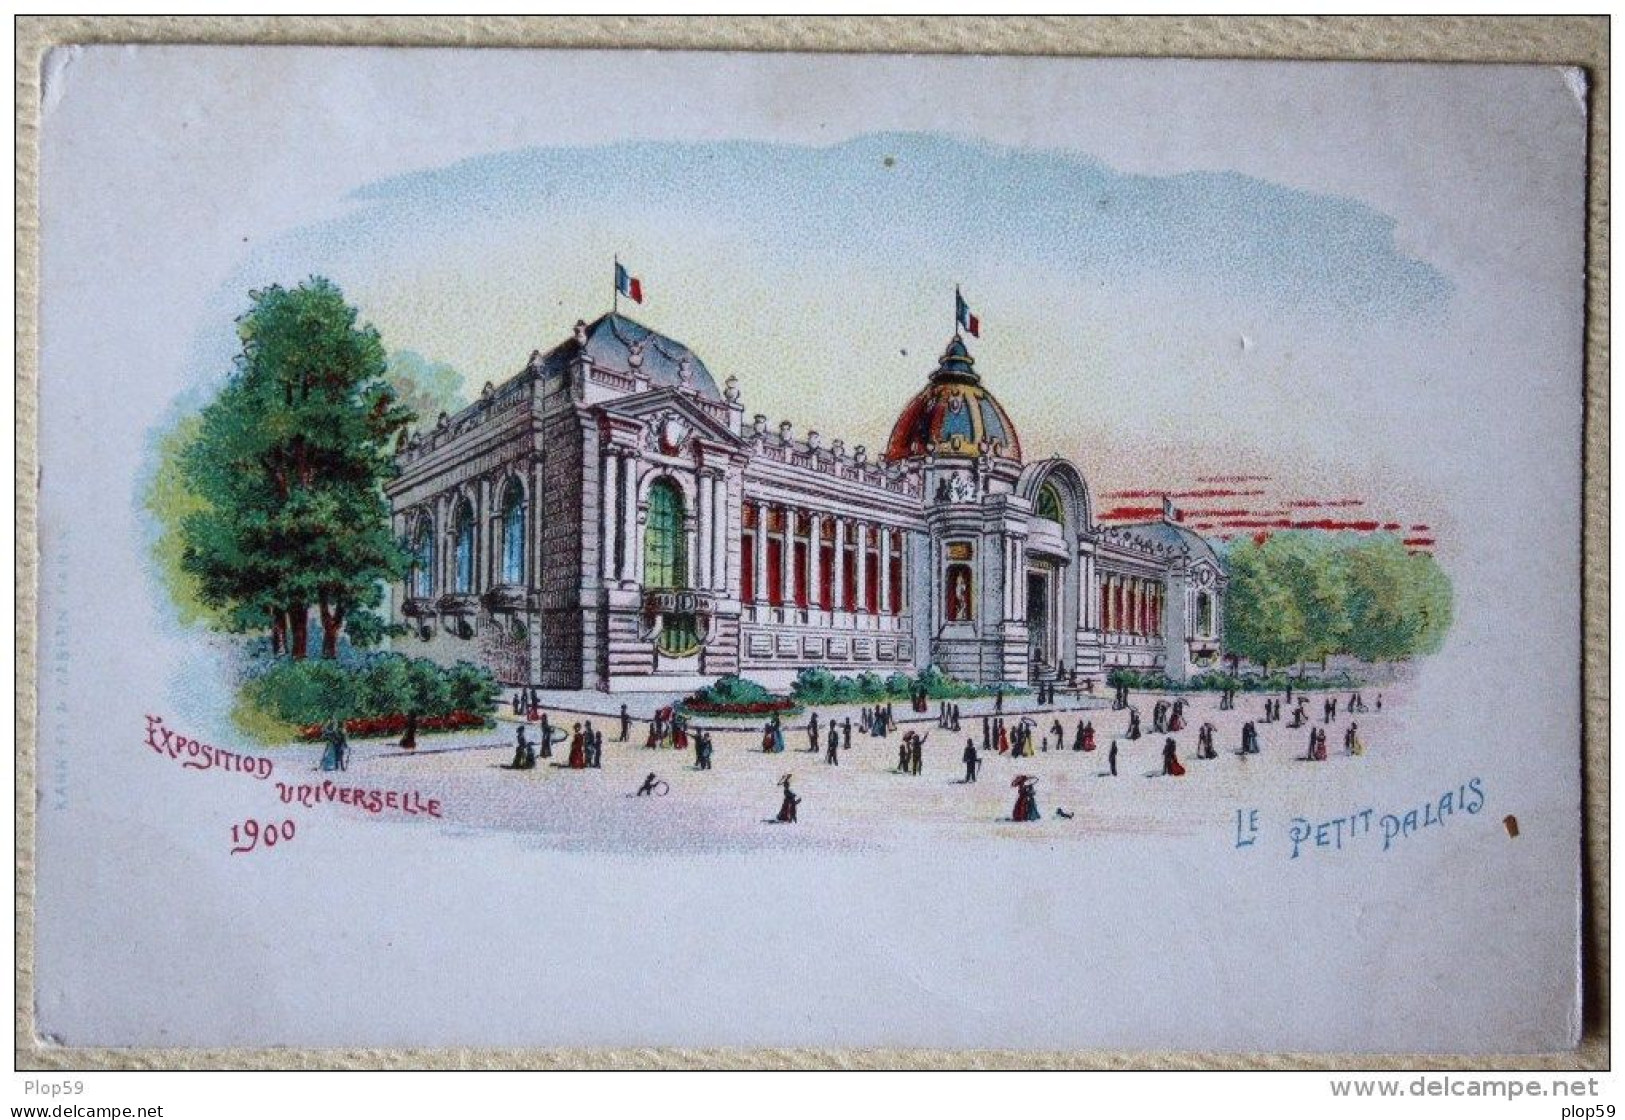 Cpa Ak Pk Champagne Mercier /exposition Universelle De 1900 Le Petit Palais - Publicidad